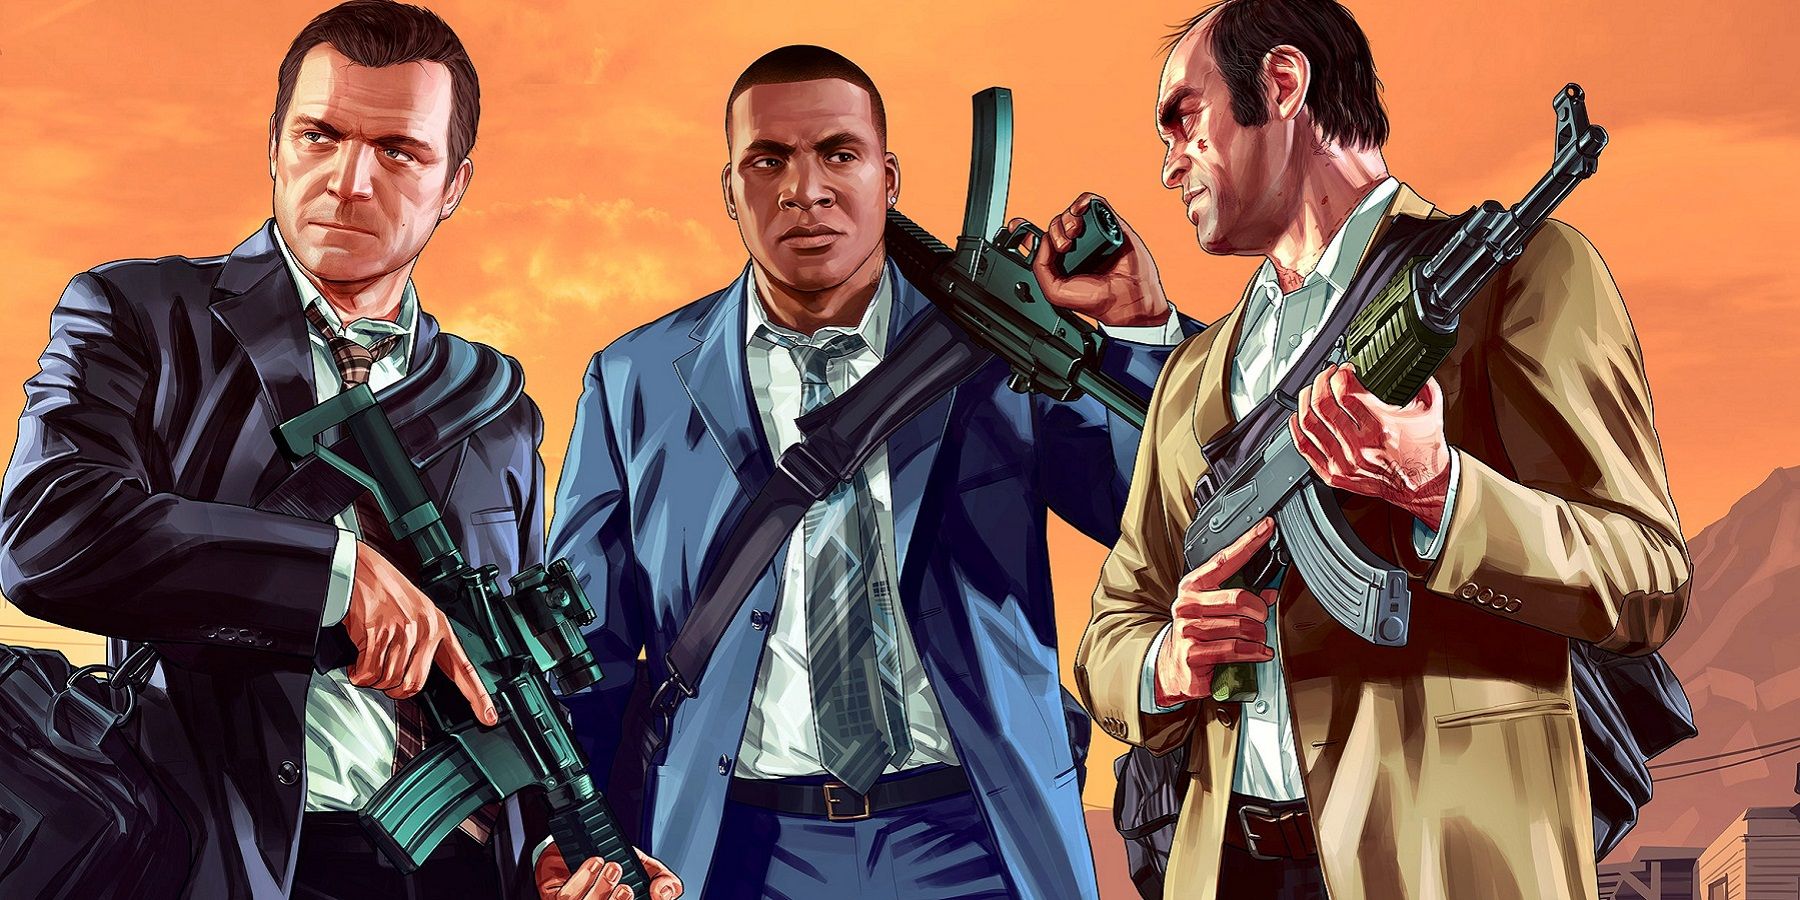 Rockstar ser ut til å si farvel til Grand Theft Auto 5